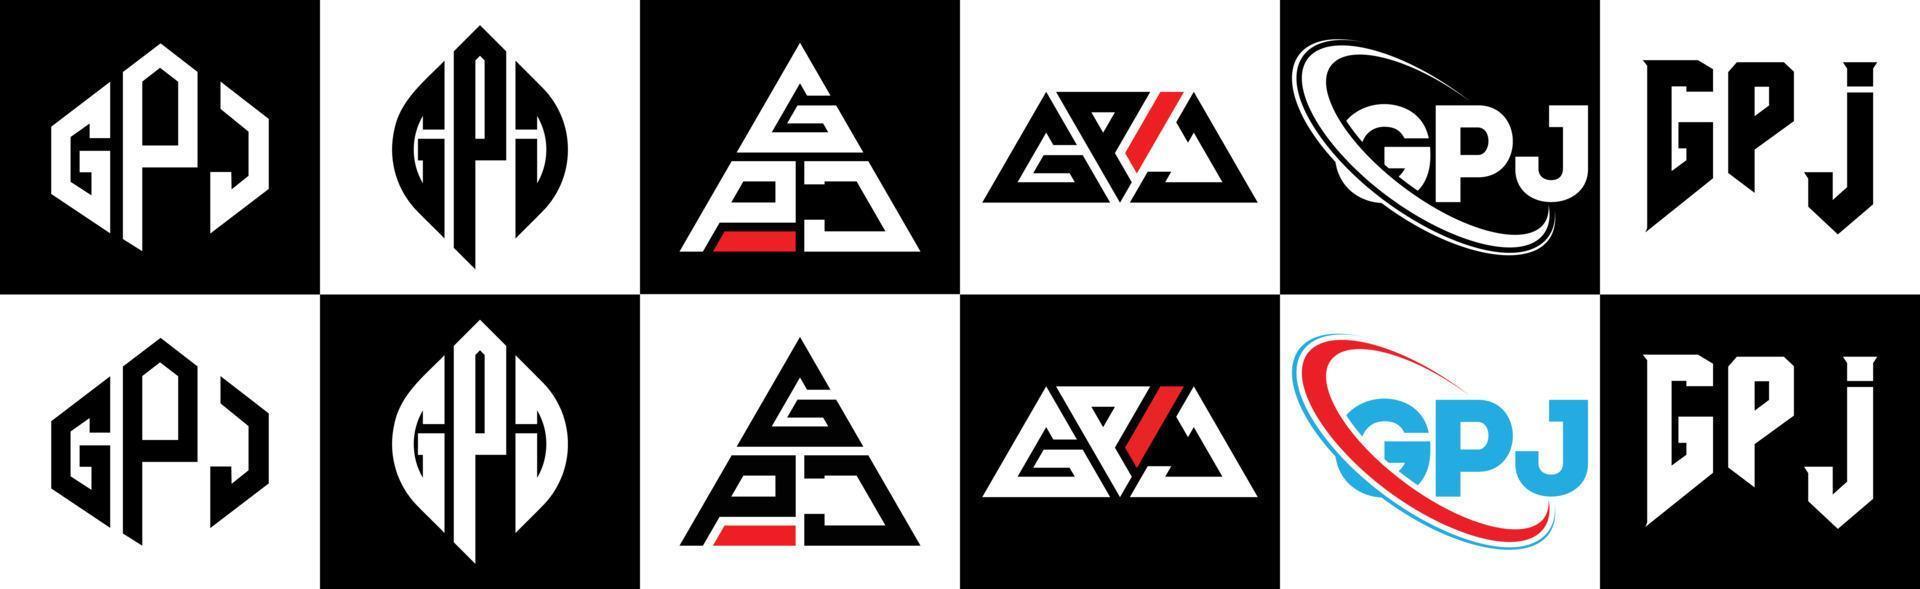 Diseño de logotipo de letra gpj en seis estilos. gpj polígono, círculo, triángulo, hexágono, estilo plano y simple con logotipo de letra de variación de color blanco y negro en una mesa de trabajo. logotipo minimalista y clásico de gpj vector